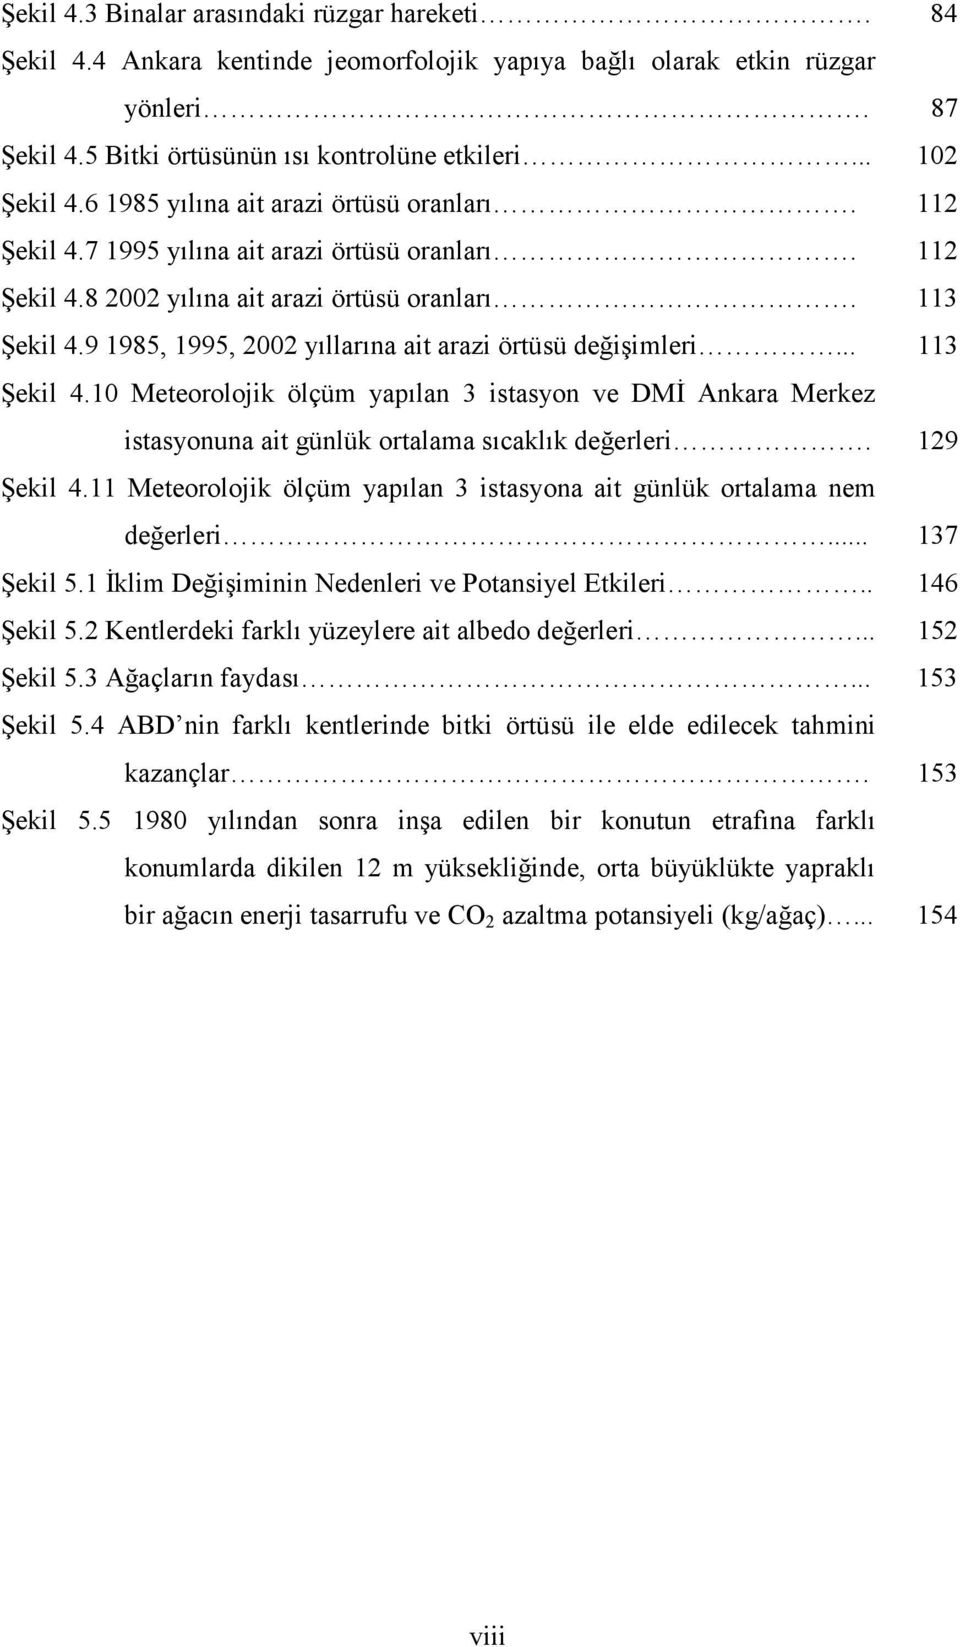 9 1985, 1995, 2002 yıllarına ait arazi örtüsü değişimleri... 113 Şekil 4.10 Meteorolojik ölçüm yapılan 3 istasyon ve DMİ Ankara Merkez istasyonuna ait günlük ortalama sıcaklık değerleri. 129 Şekil 4.